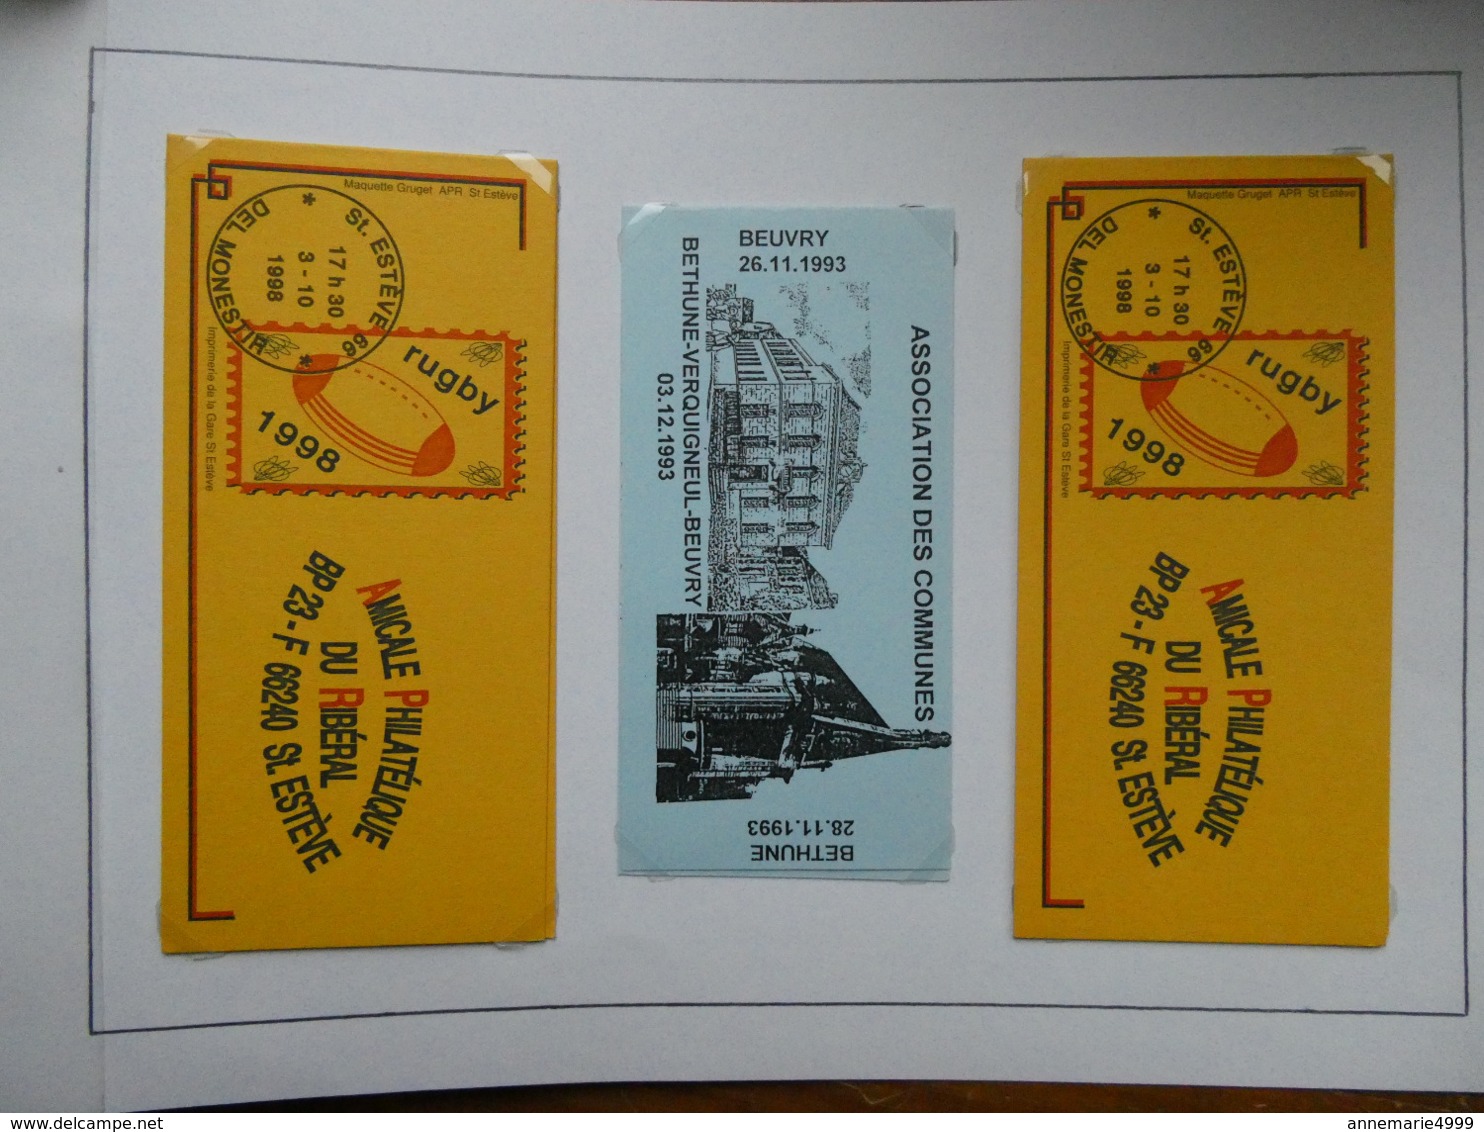 FRANCE  Collection de 122 carnets tests ou privés ou porte-timbres Parfait état